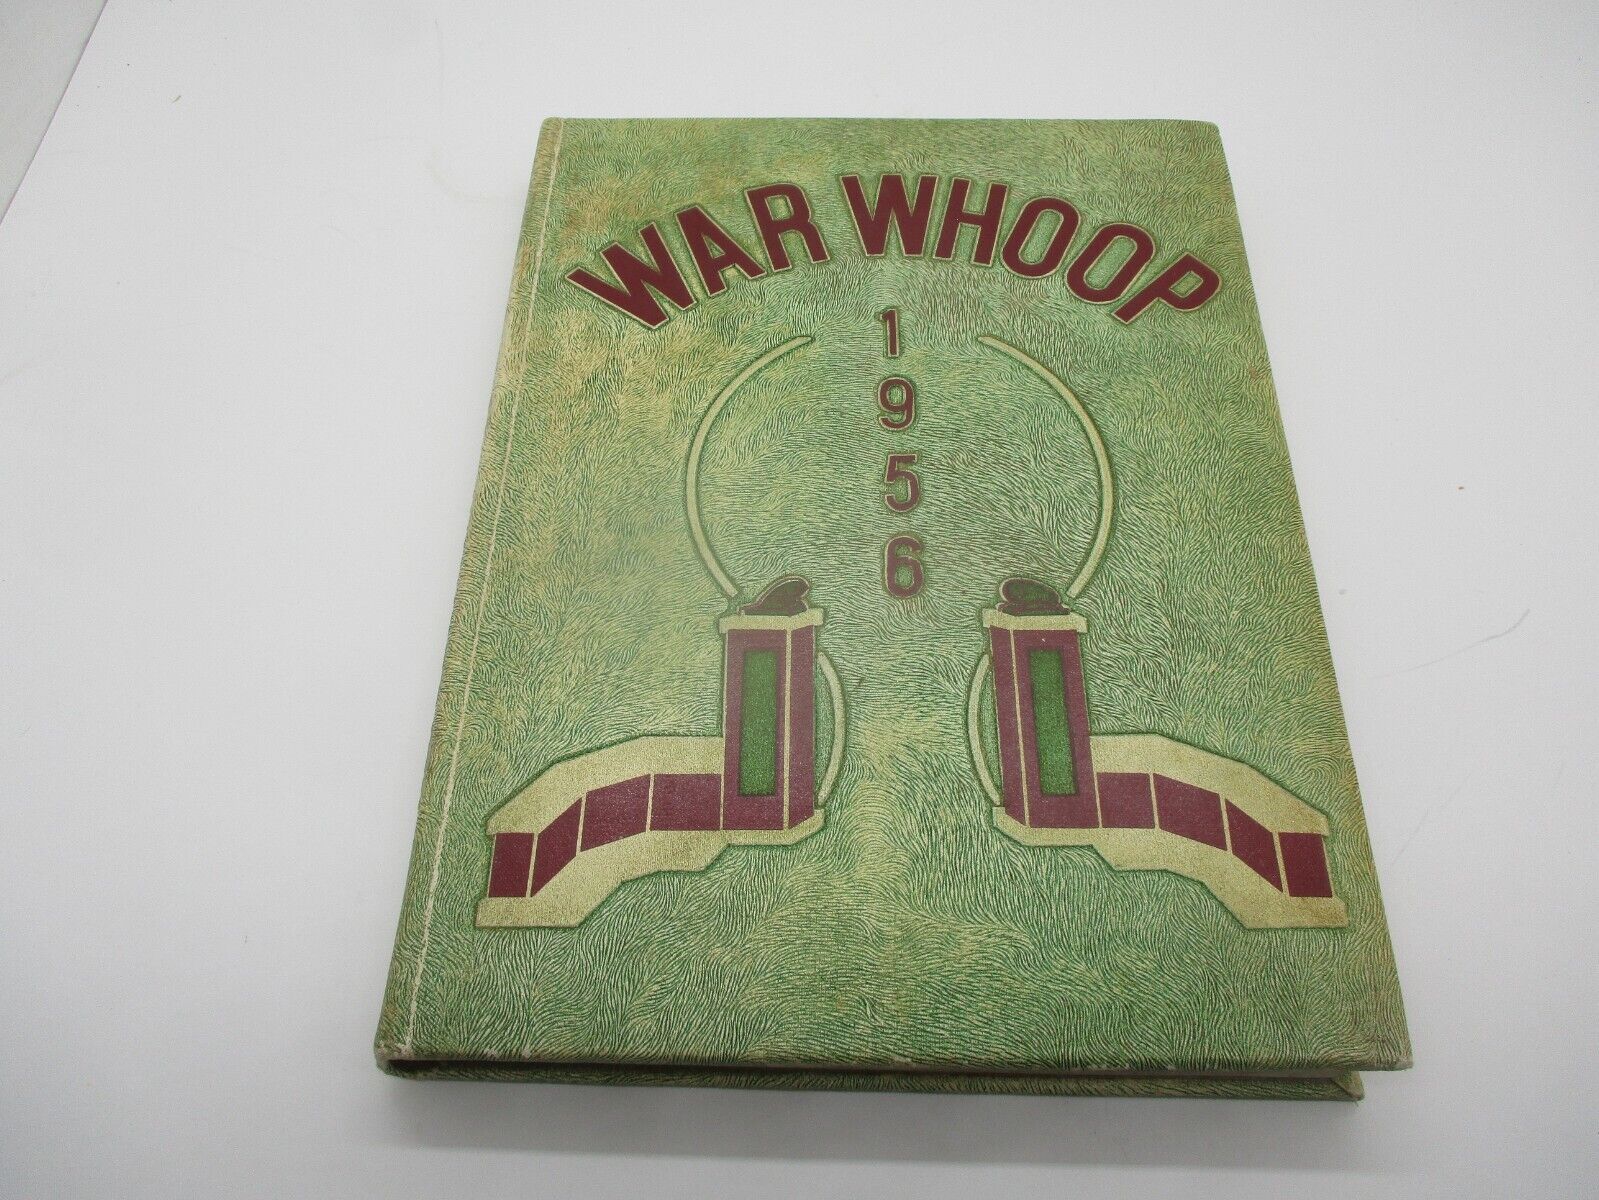 1956 WAR WHOOP - NORWICH UNIVERSITY YEARBOOK - NORTHFIELD VERMONT